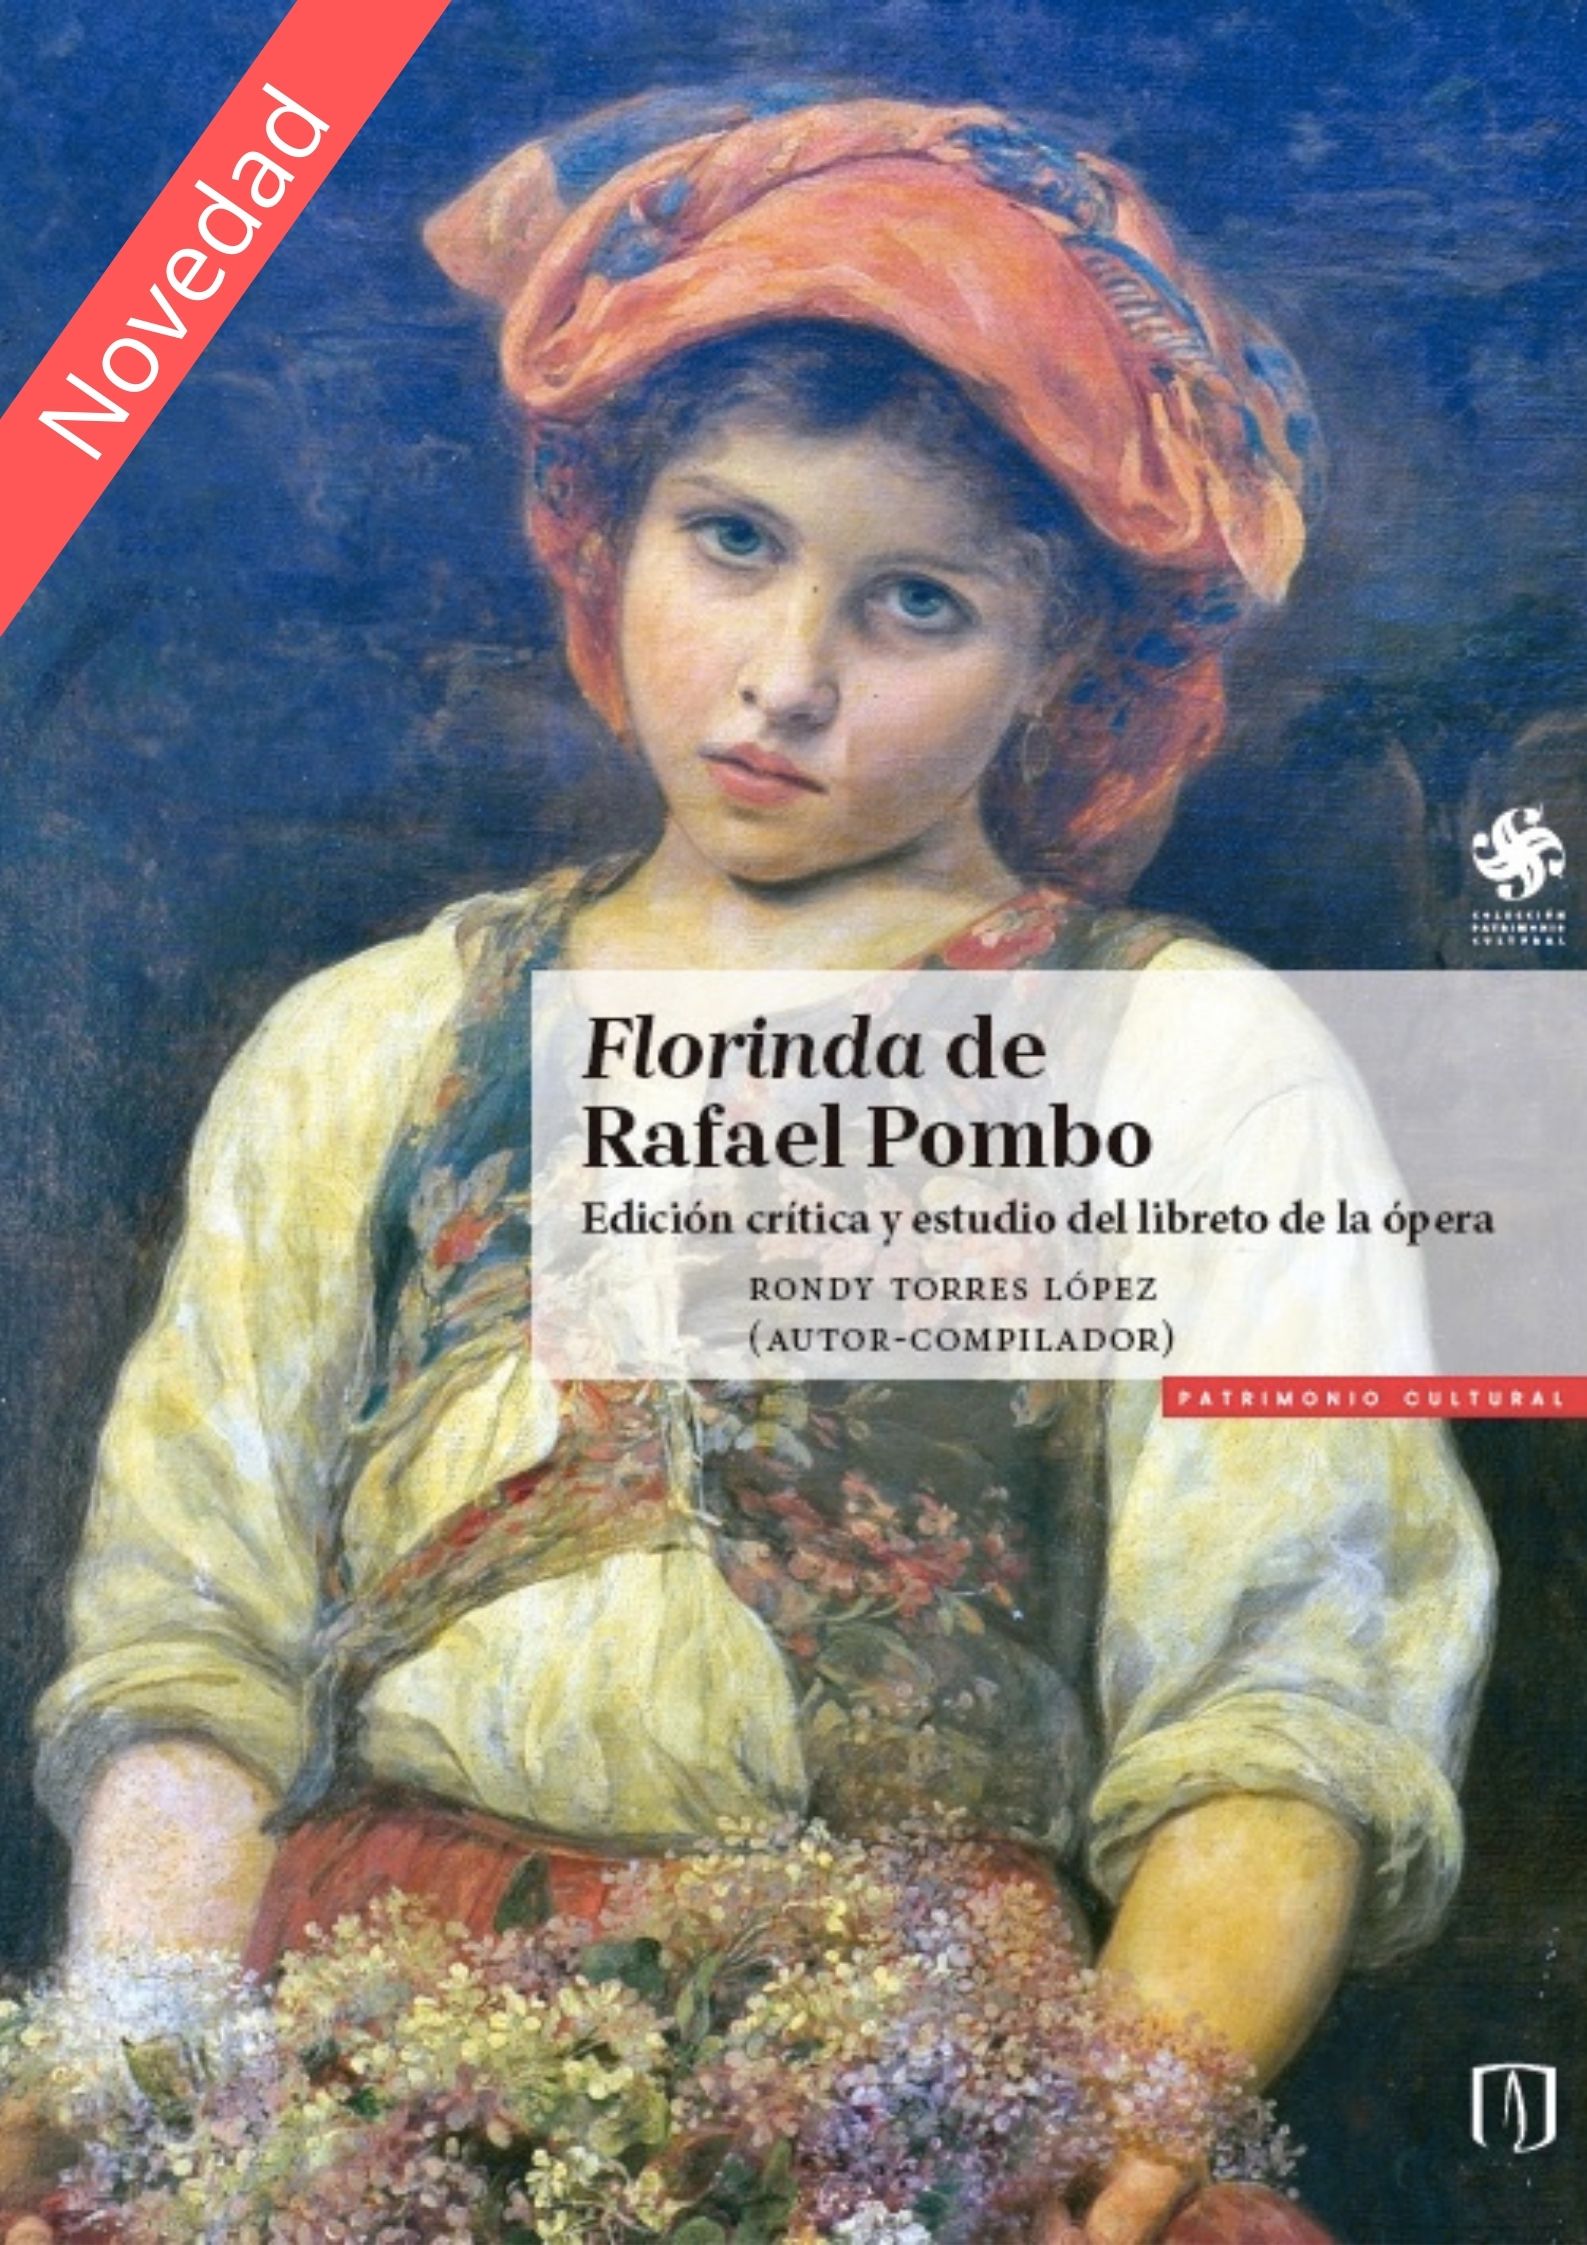 Florinda de Rafael Pombo. Edición crítica y estudio del libreto de la ópera